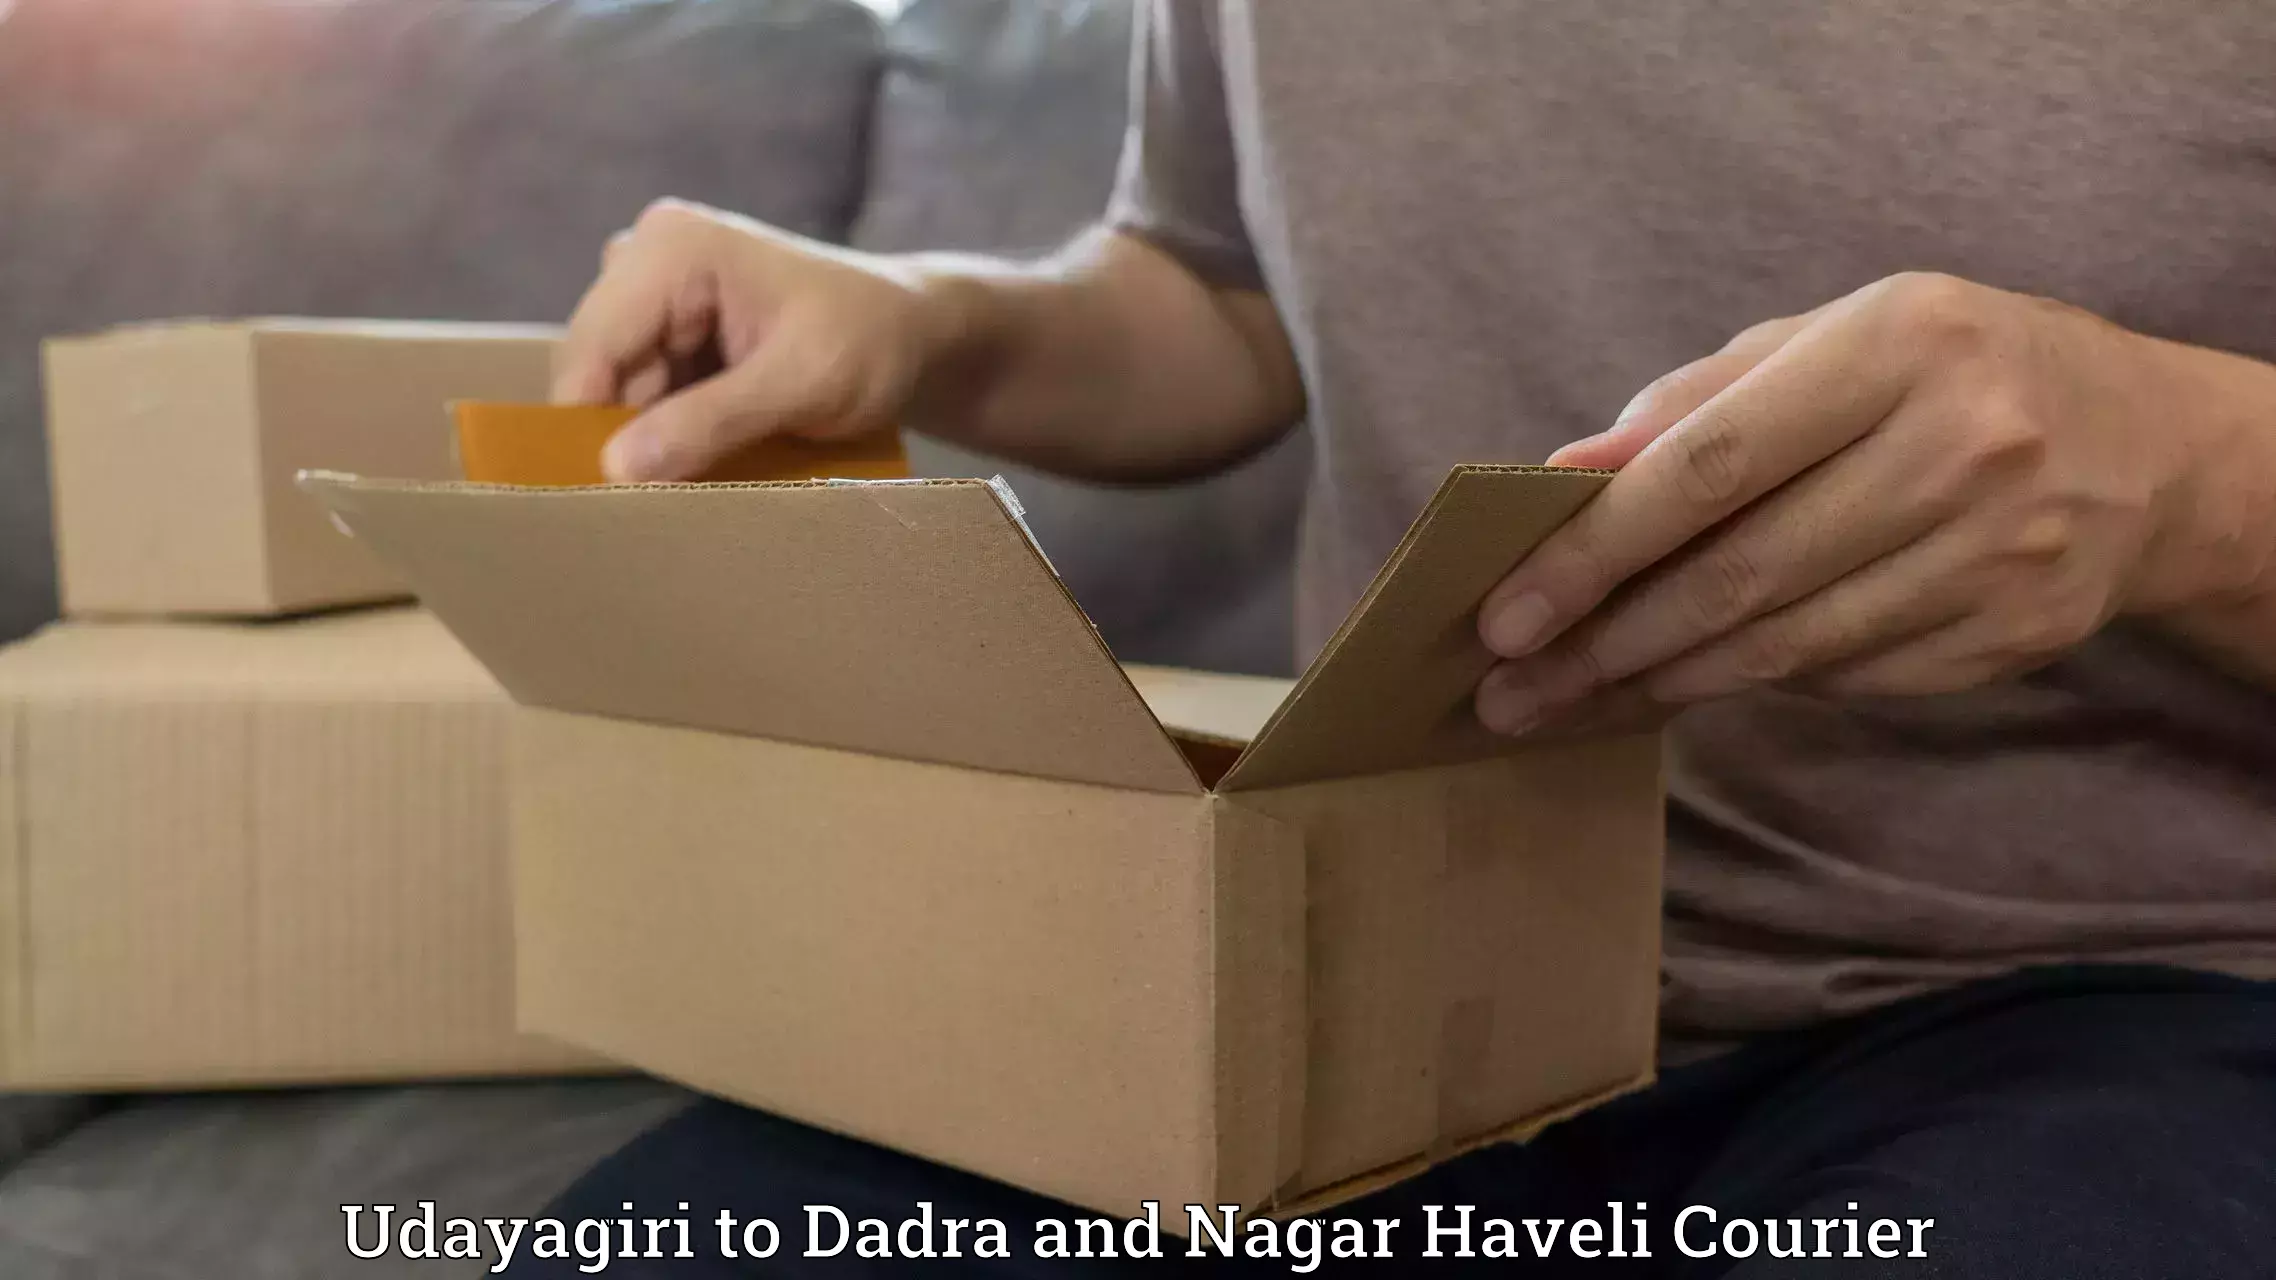 Reliable logistics providers Udayagiri to Dadra and Nagar Haveli